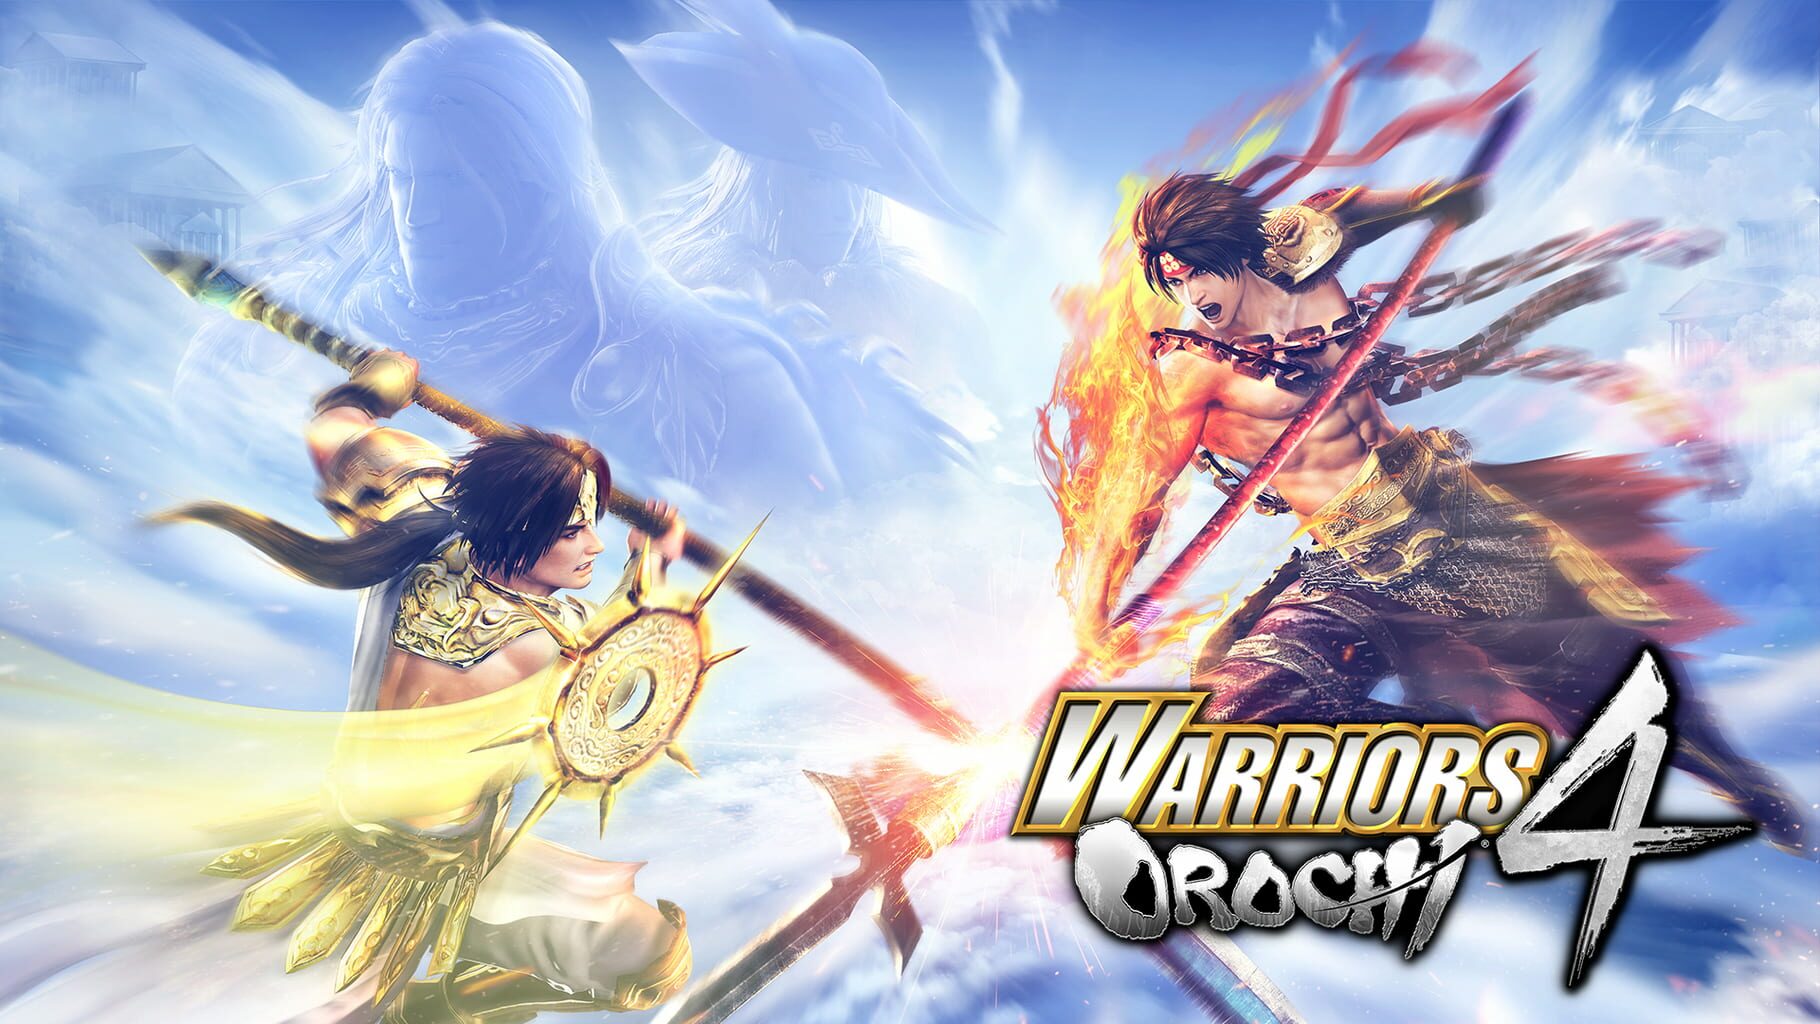 Artwork for Warriors Orochi 4